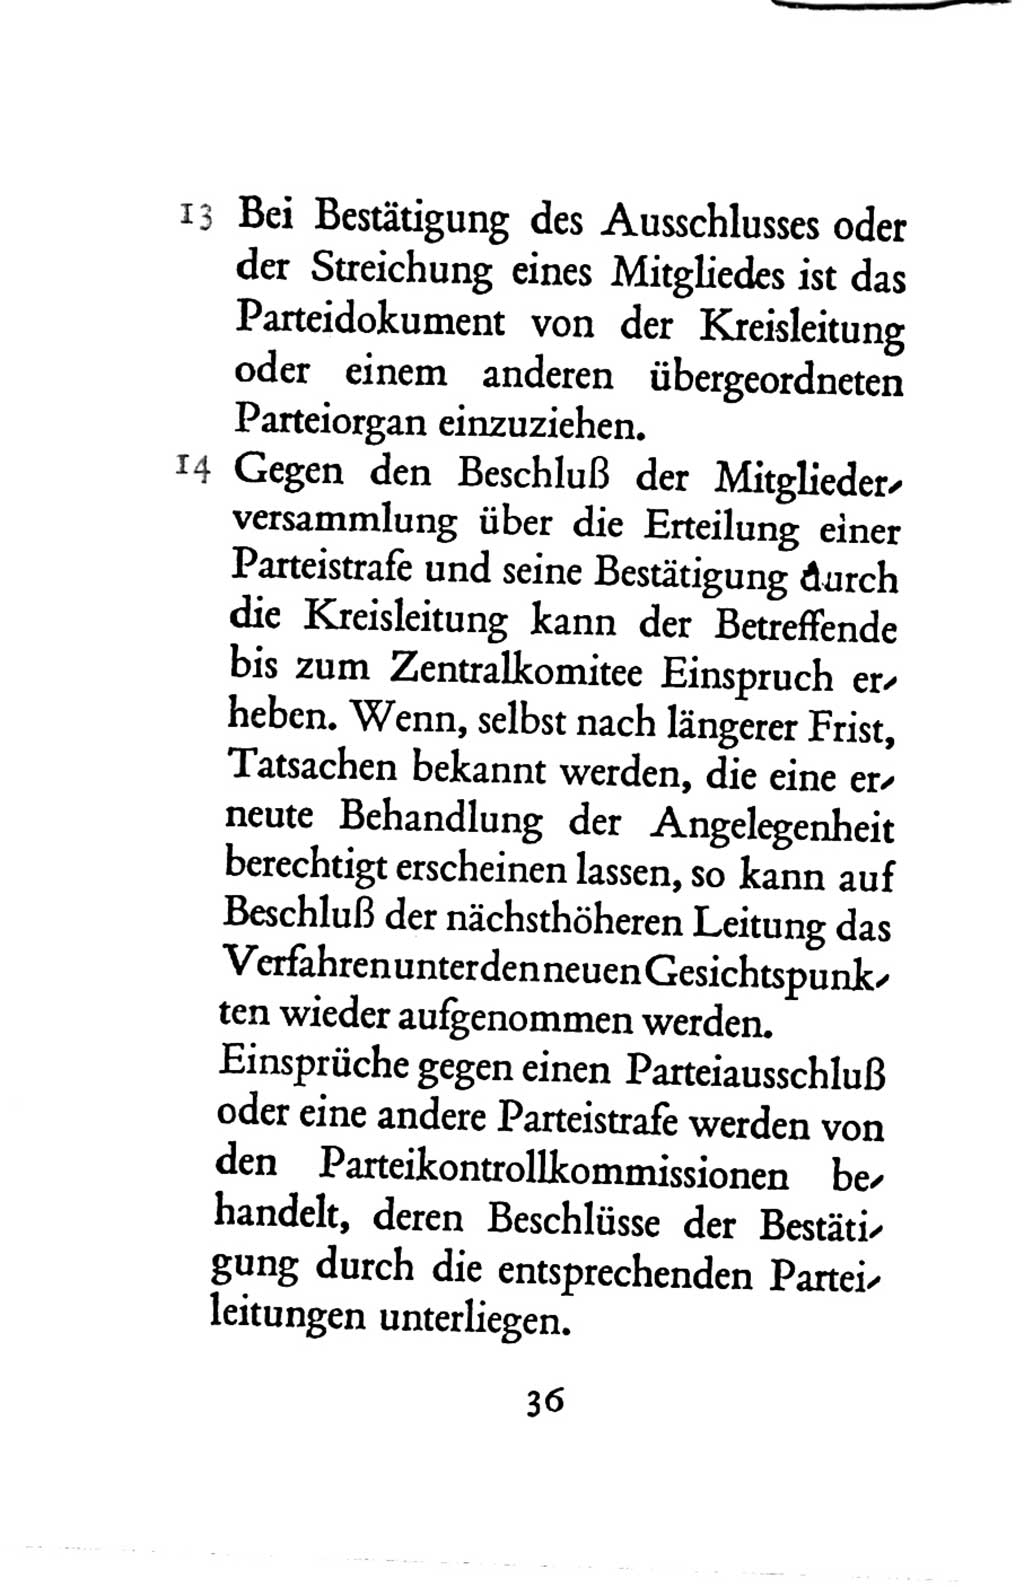 Statut der Sozialistischen Einheitspartei Deutschlands (SED) 1963, Seite 36 (St. SED DDR 1963, S. 36)